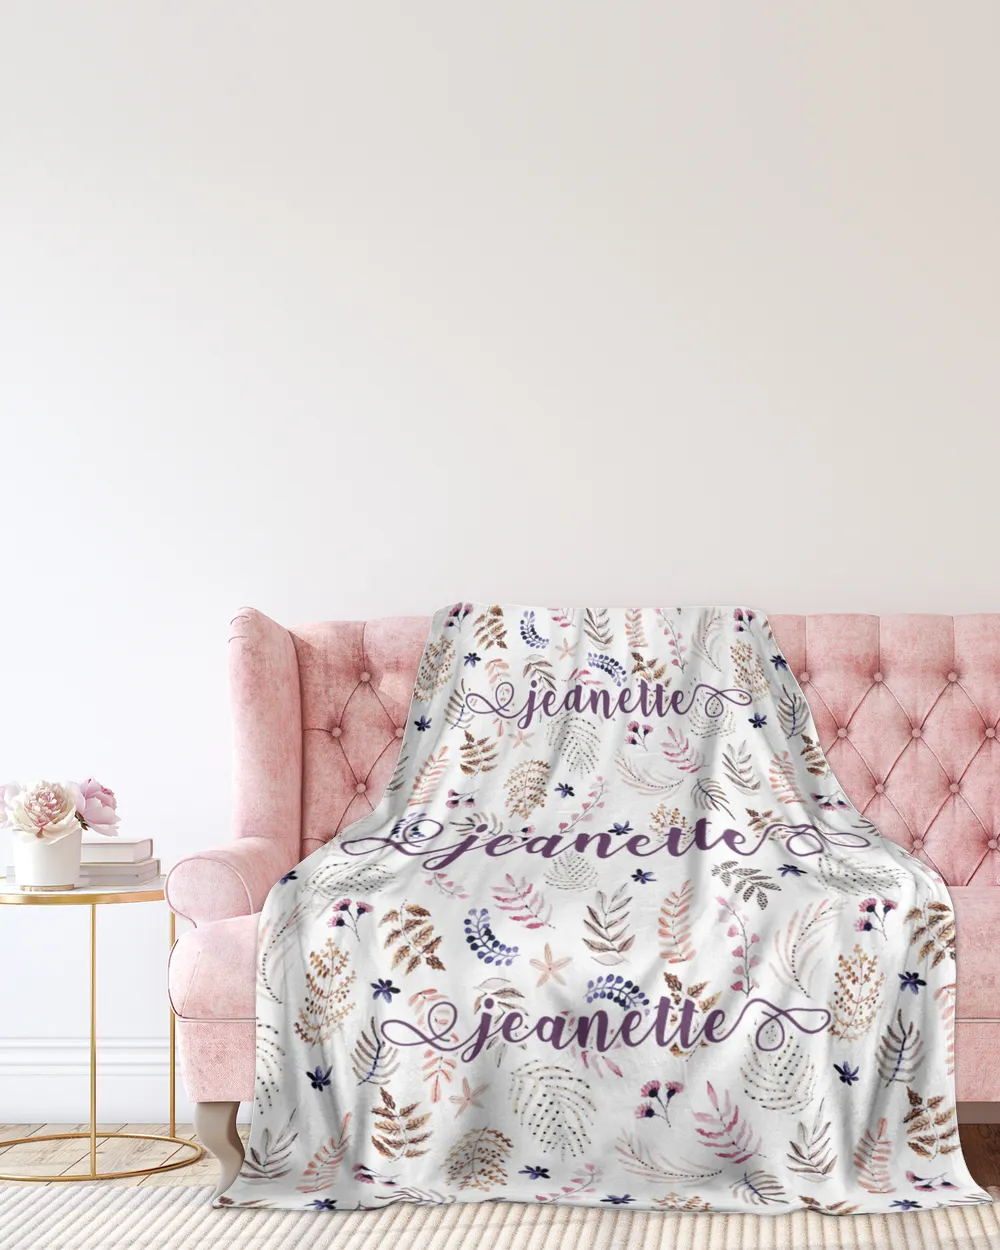 Jeanette Floral Blanket